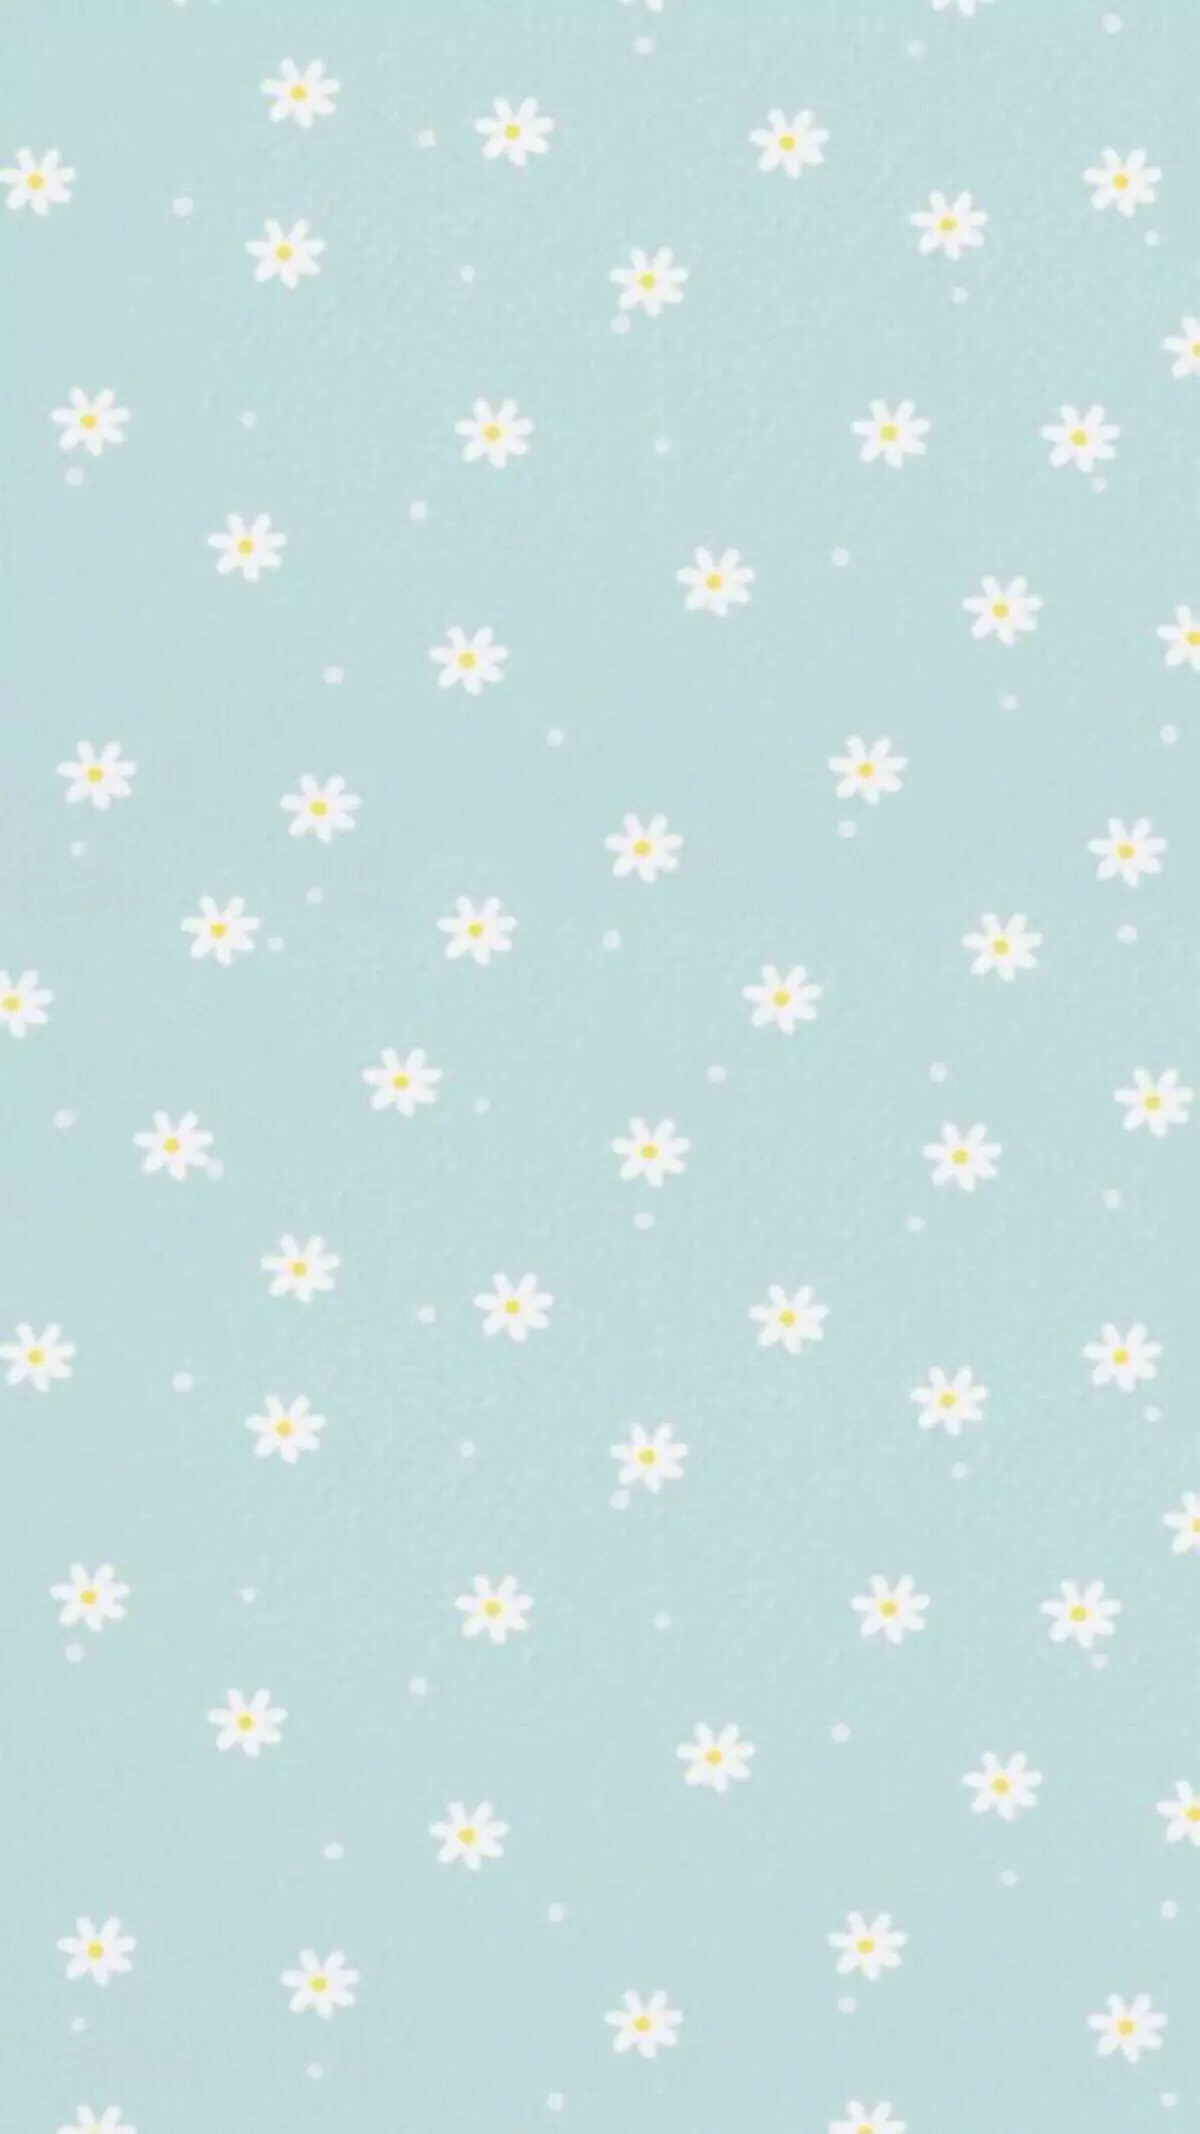 欧式田园花纹碎花壁纸布料 (2)材质贴图下载-【集简空间】「每日更新」